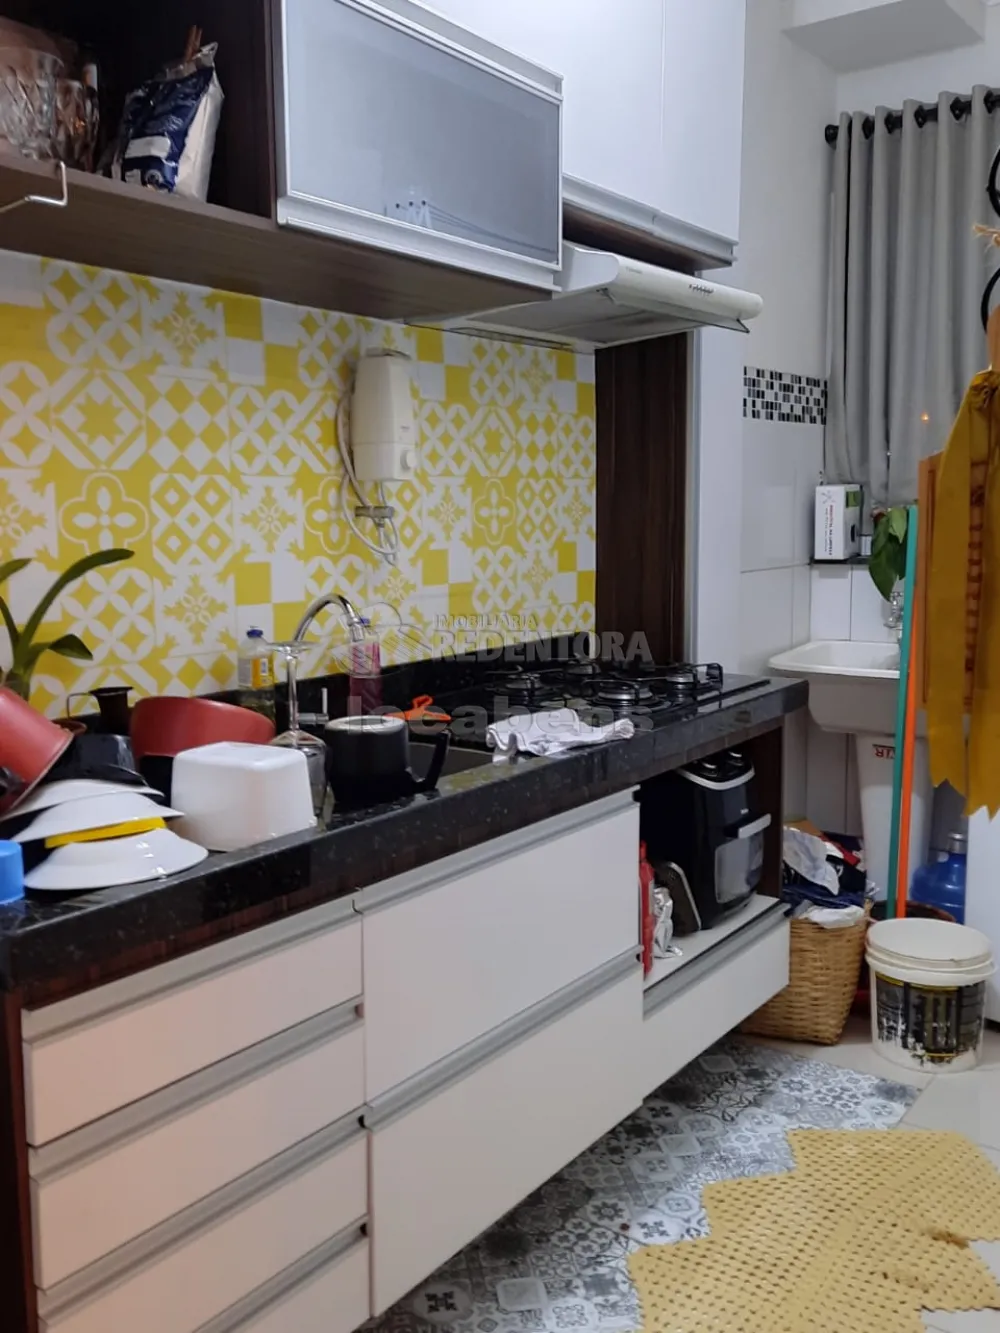 Comprar Apartamento / Padrão em São José do Rio Preto apenas R$ 160.000,00 - Foto 9